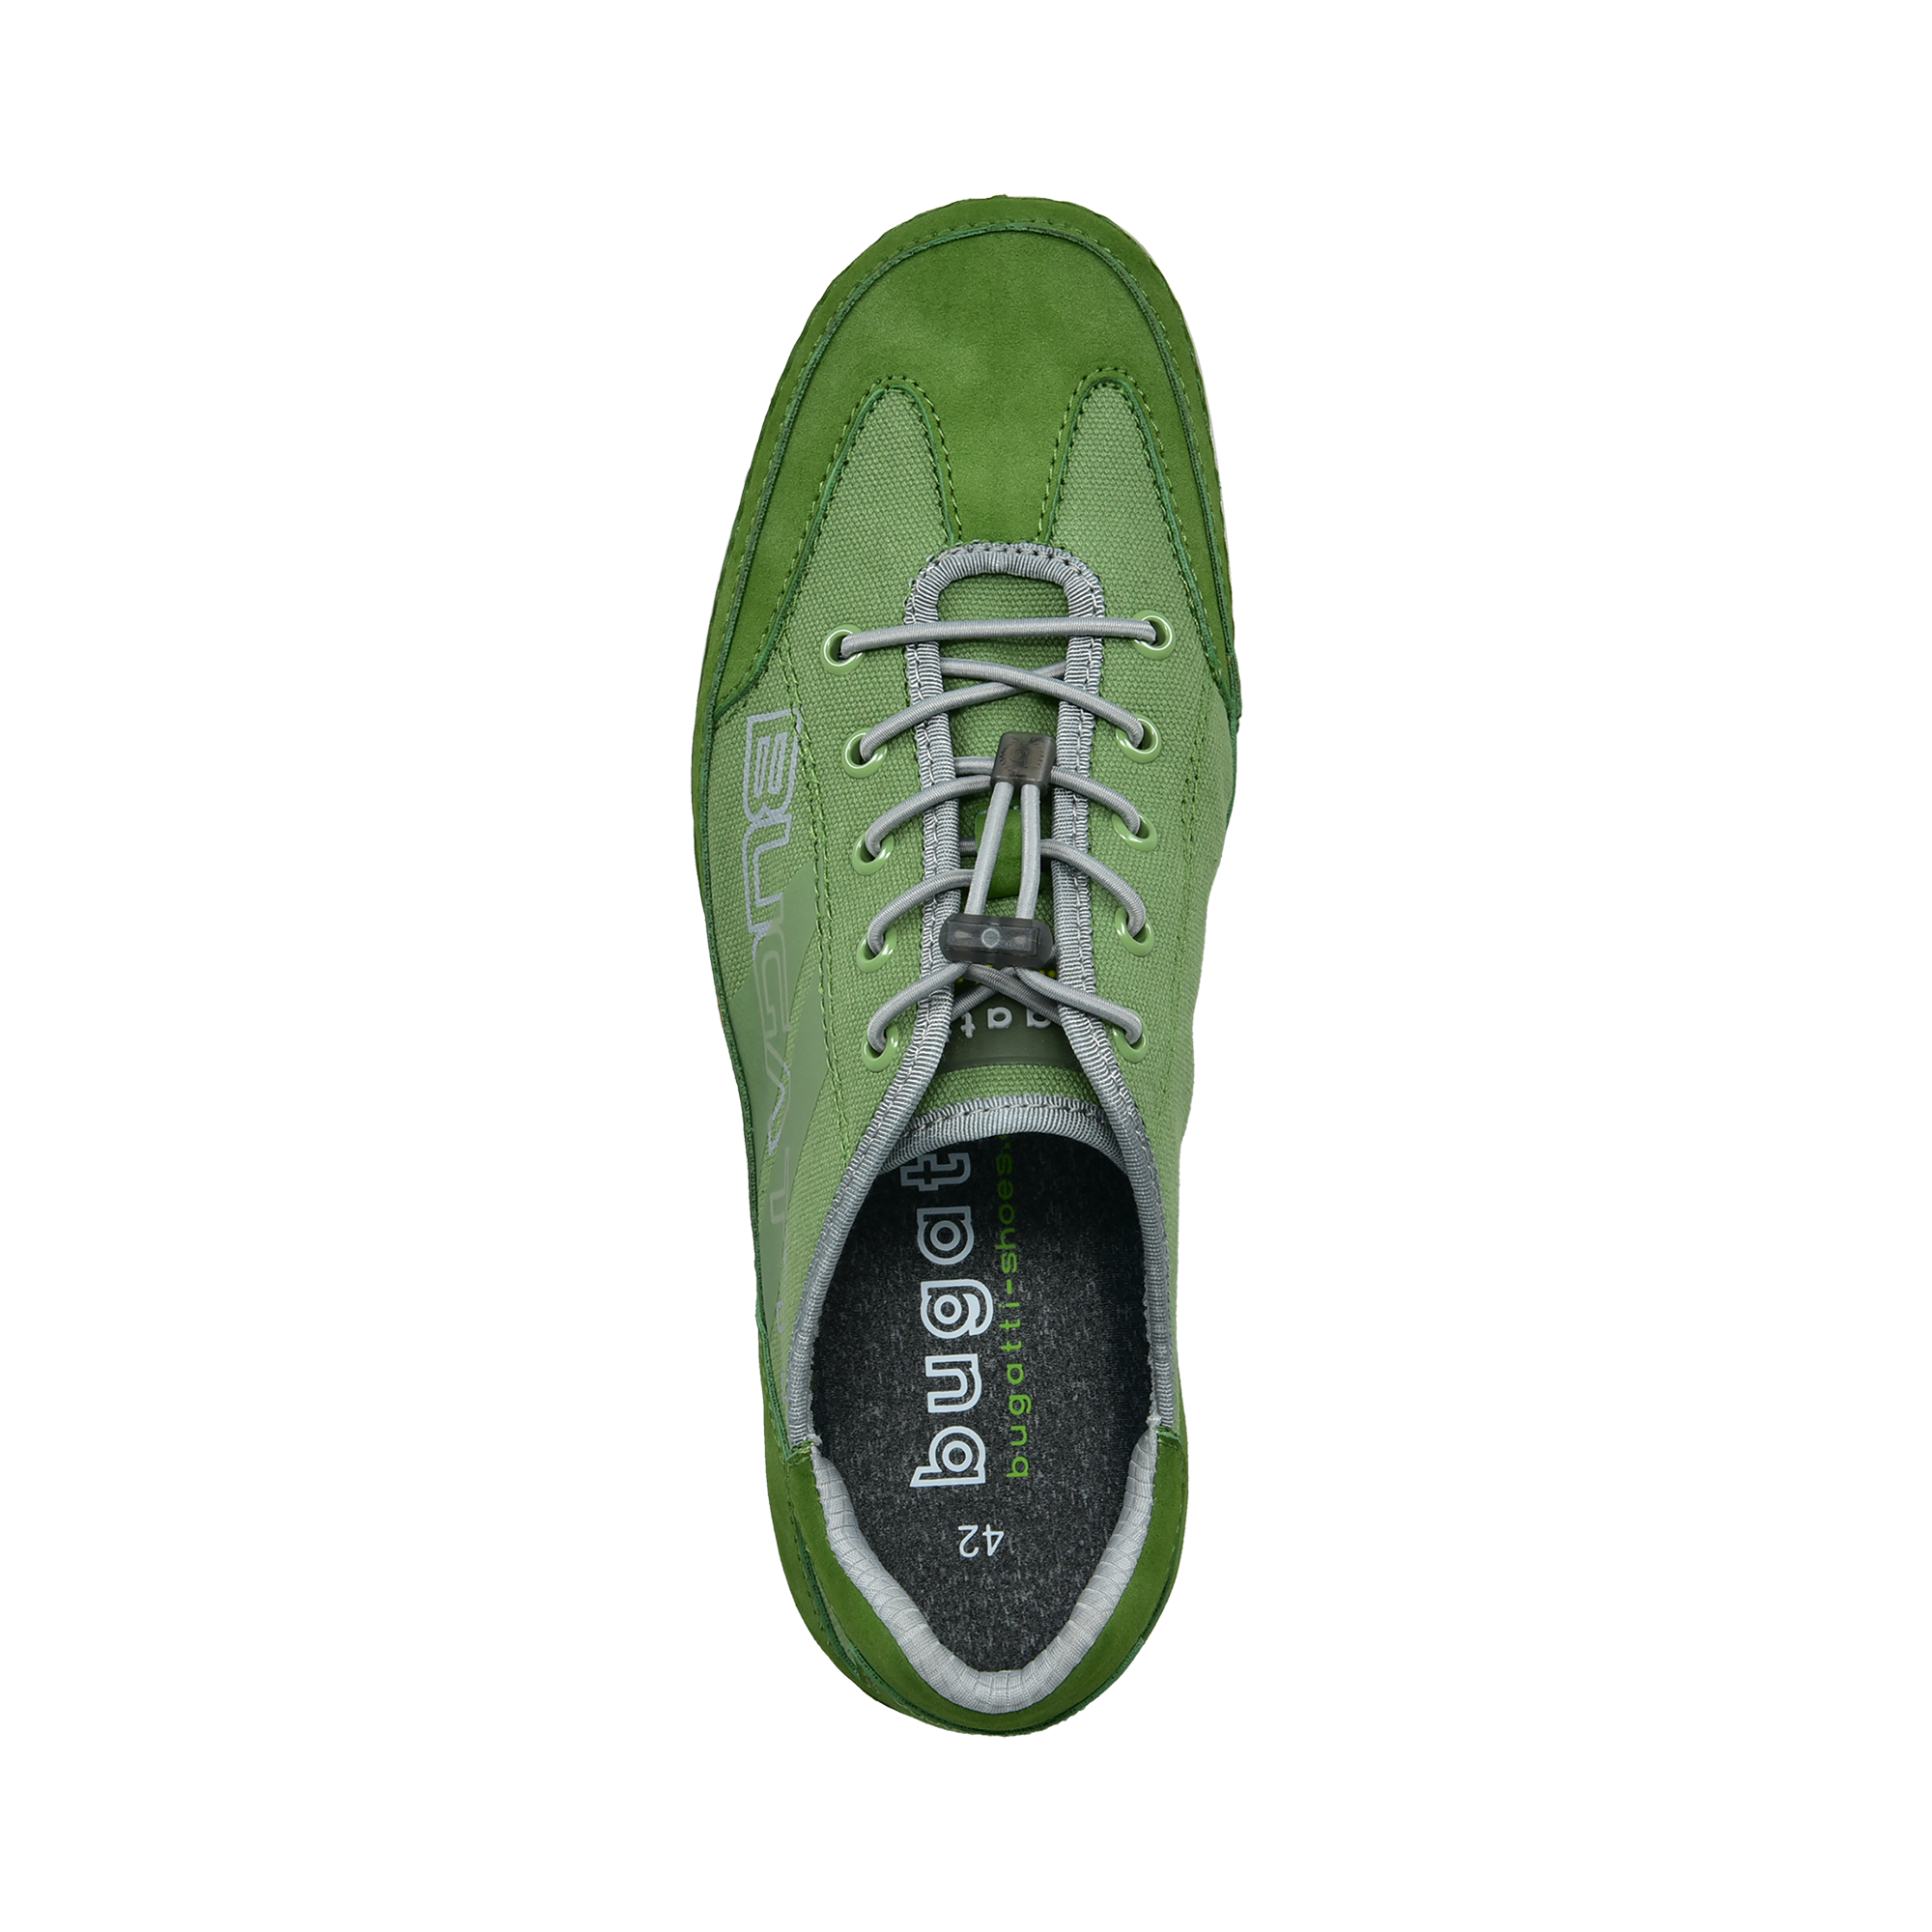 Sneaker grün